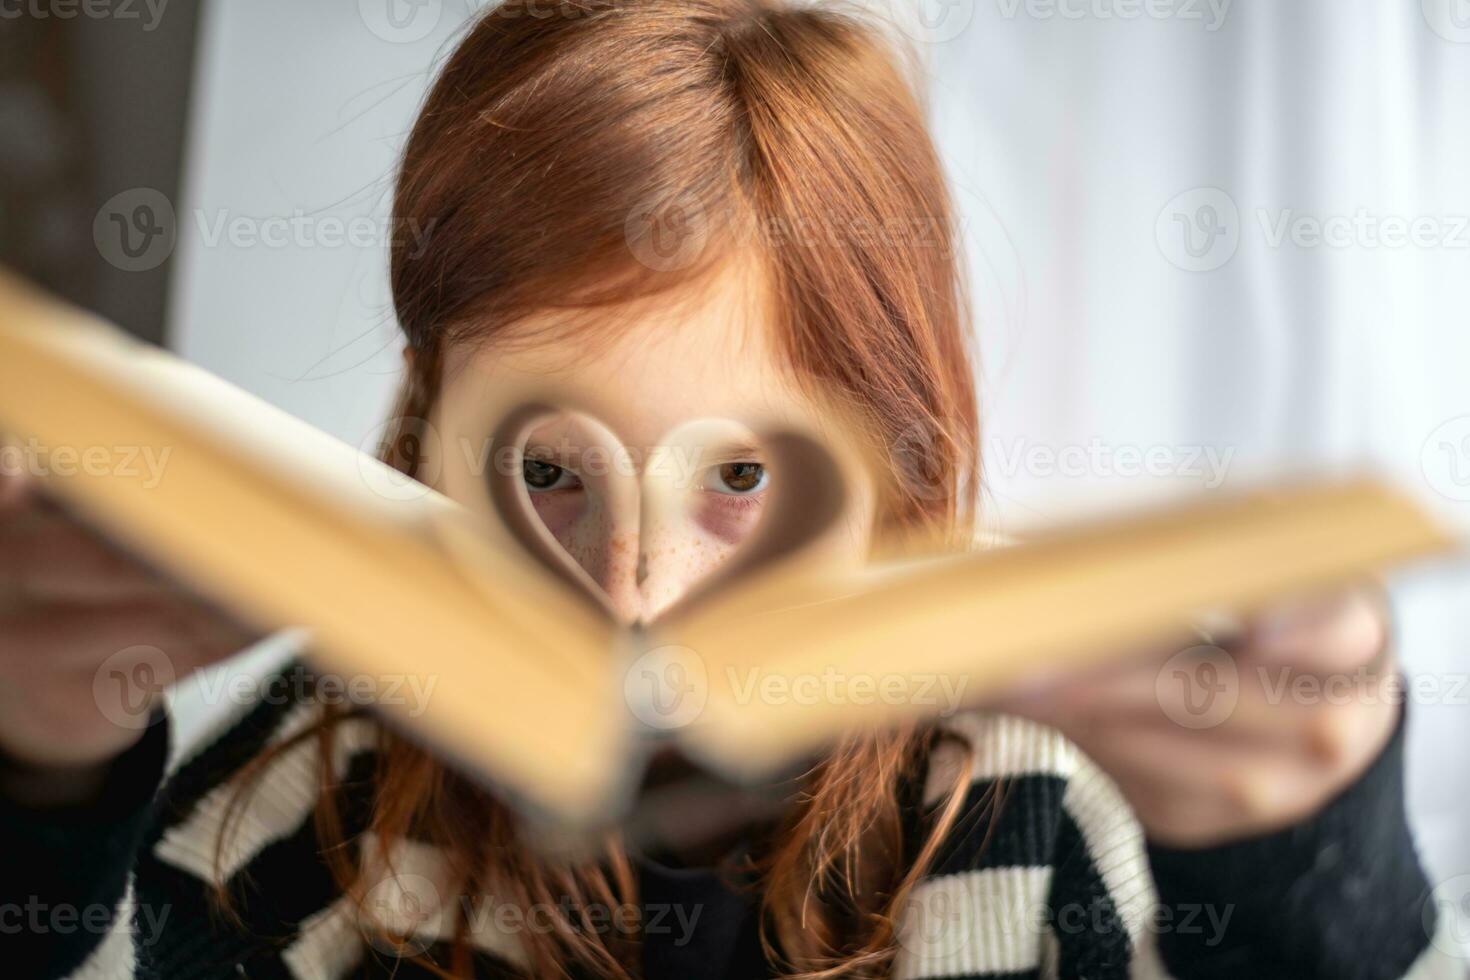 een meisje is Holding een boek. hartvormig Pagina's. lezing, wetende, aan het leren foto